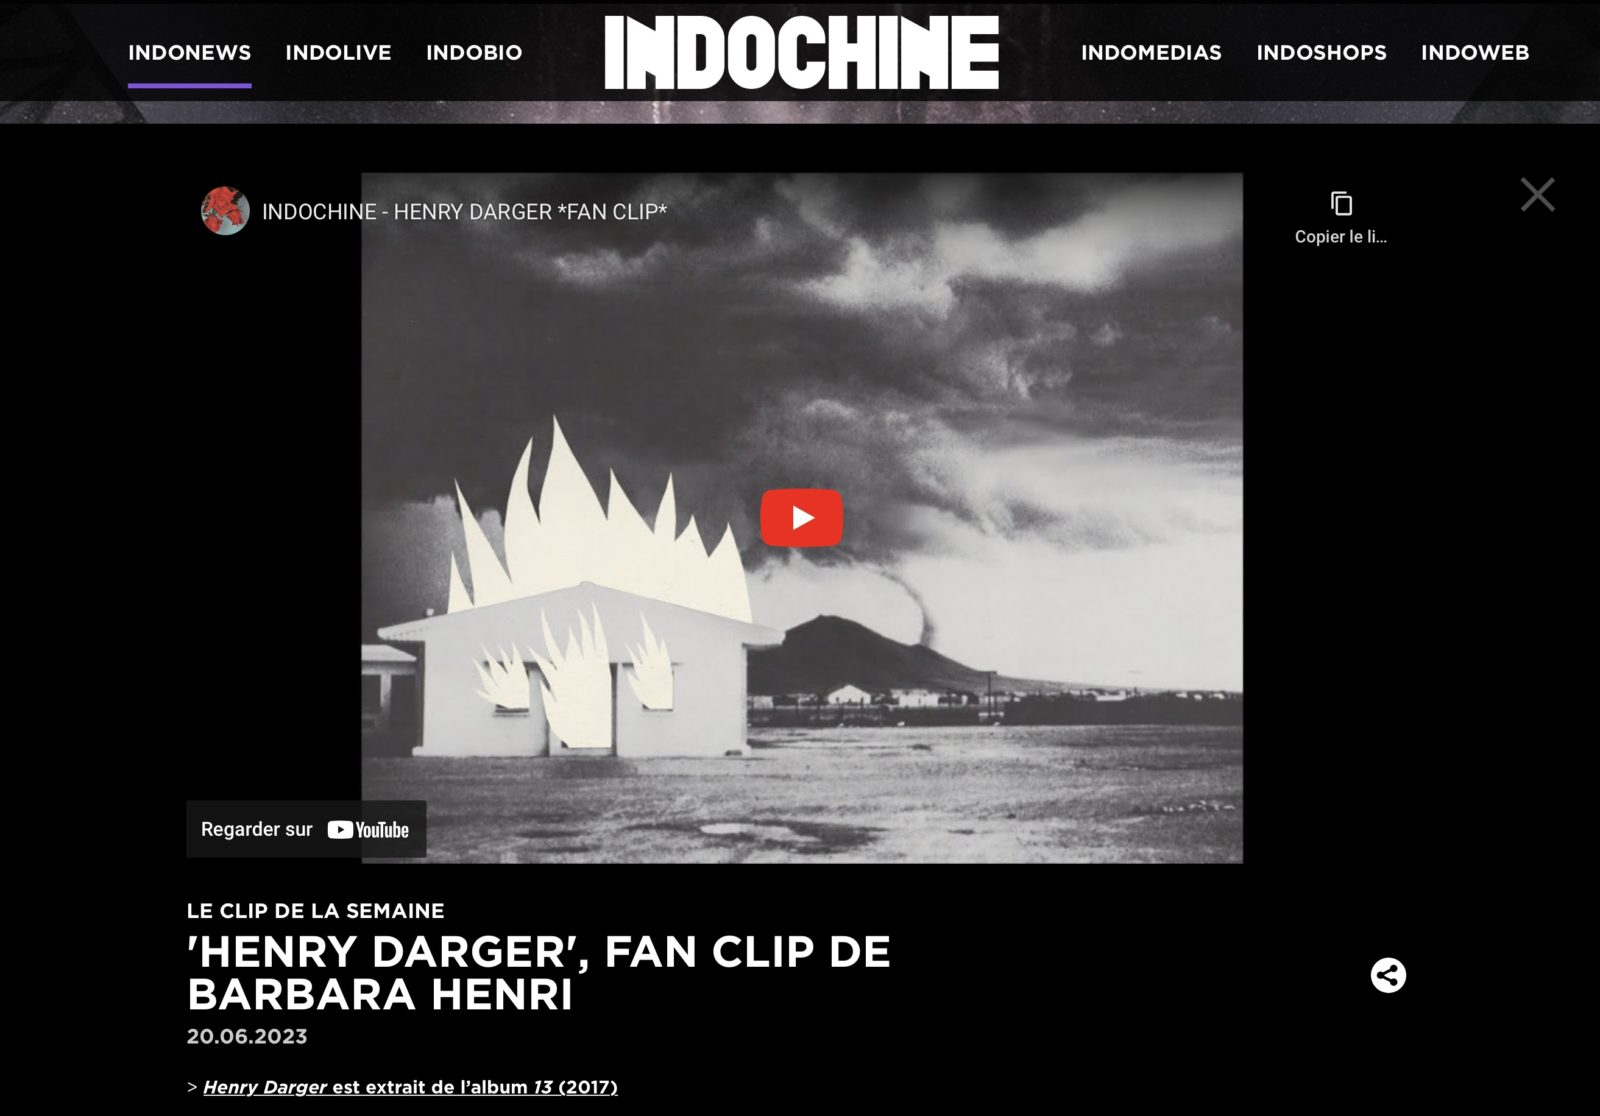 Site officiel Indochine (indo.fr)